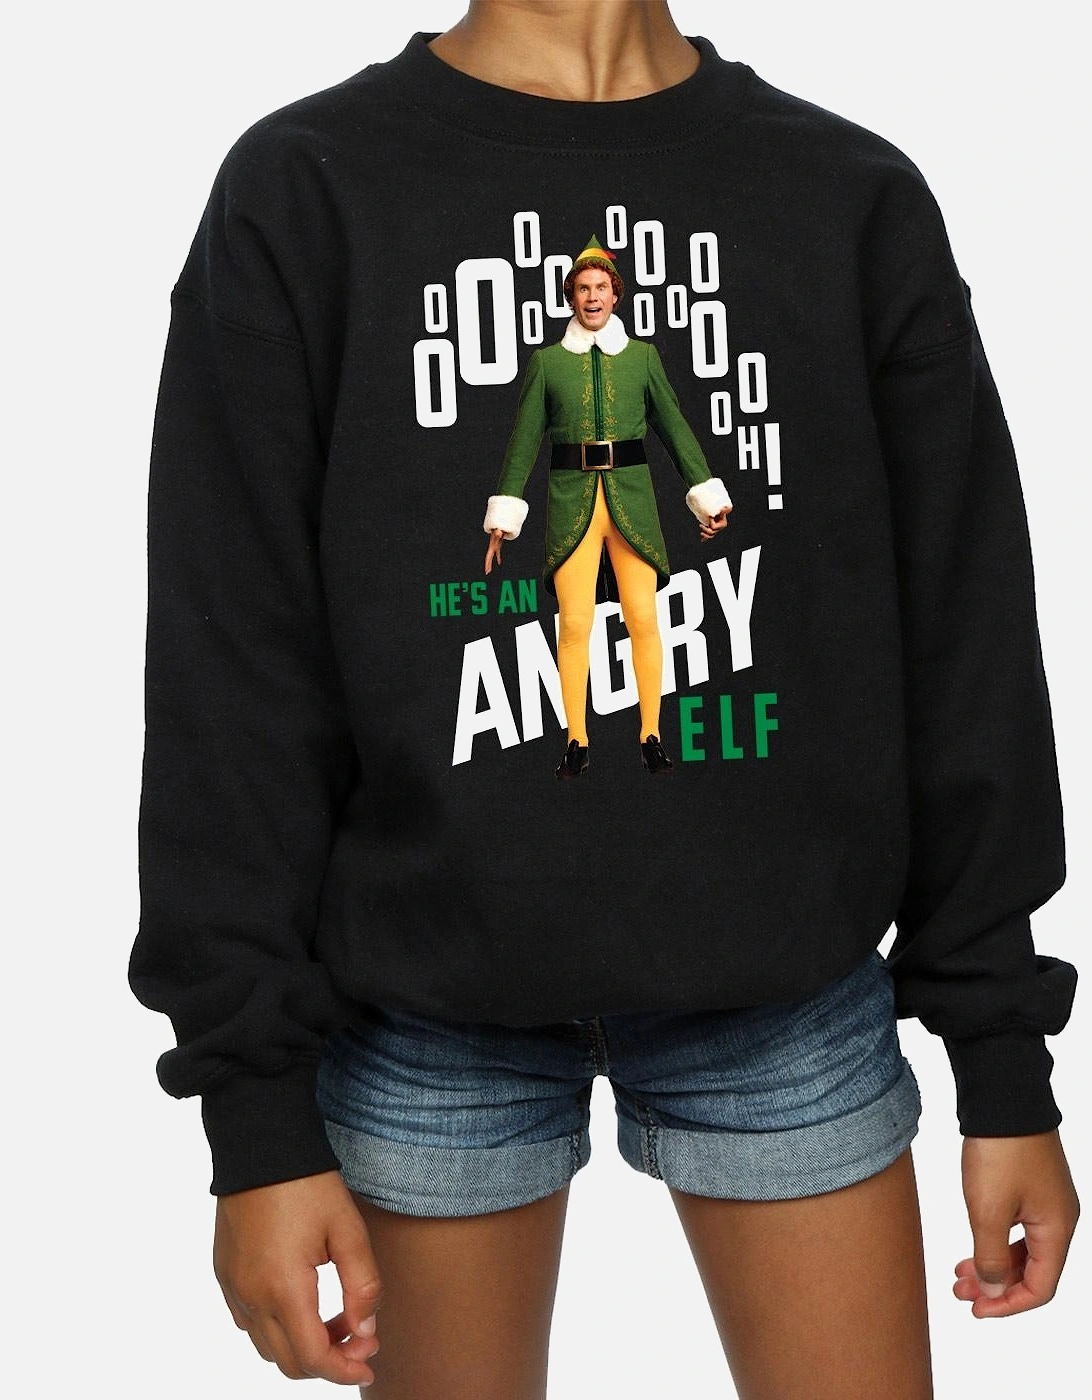 Girls Angry Sweatshirt